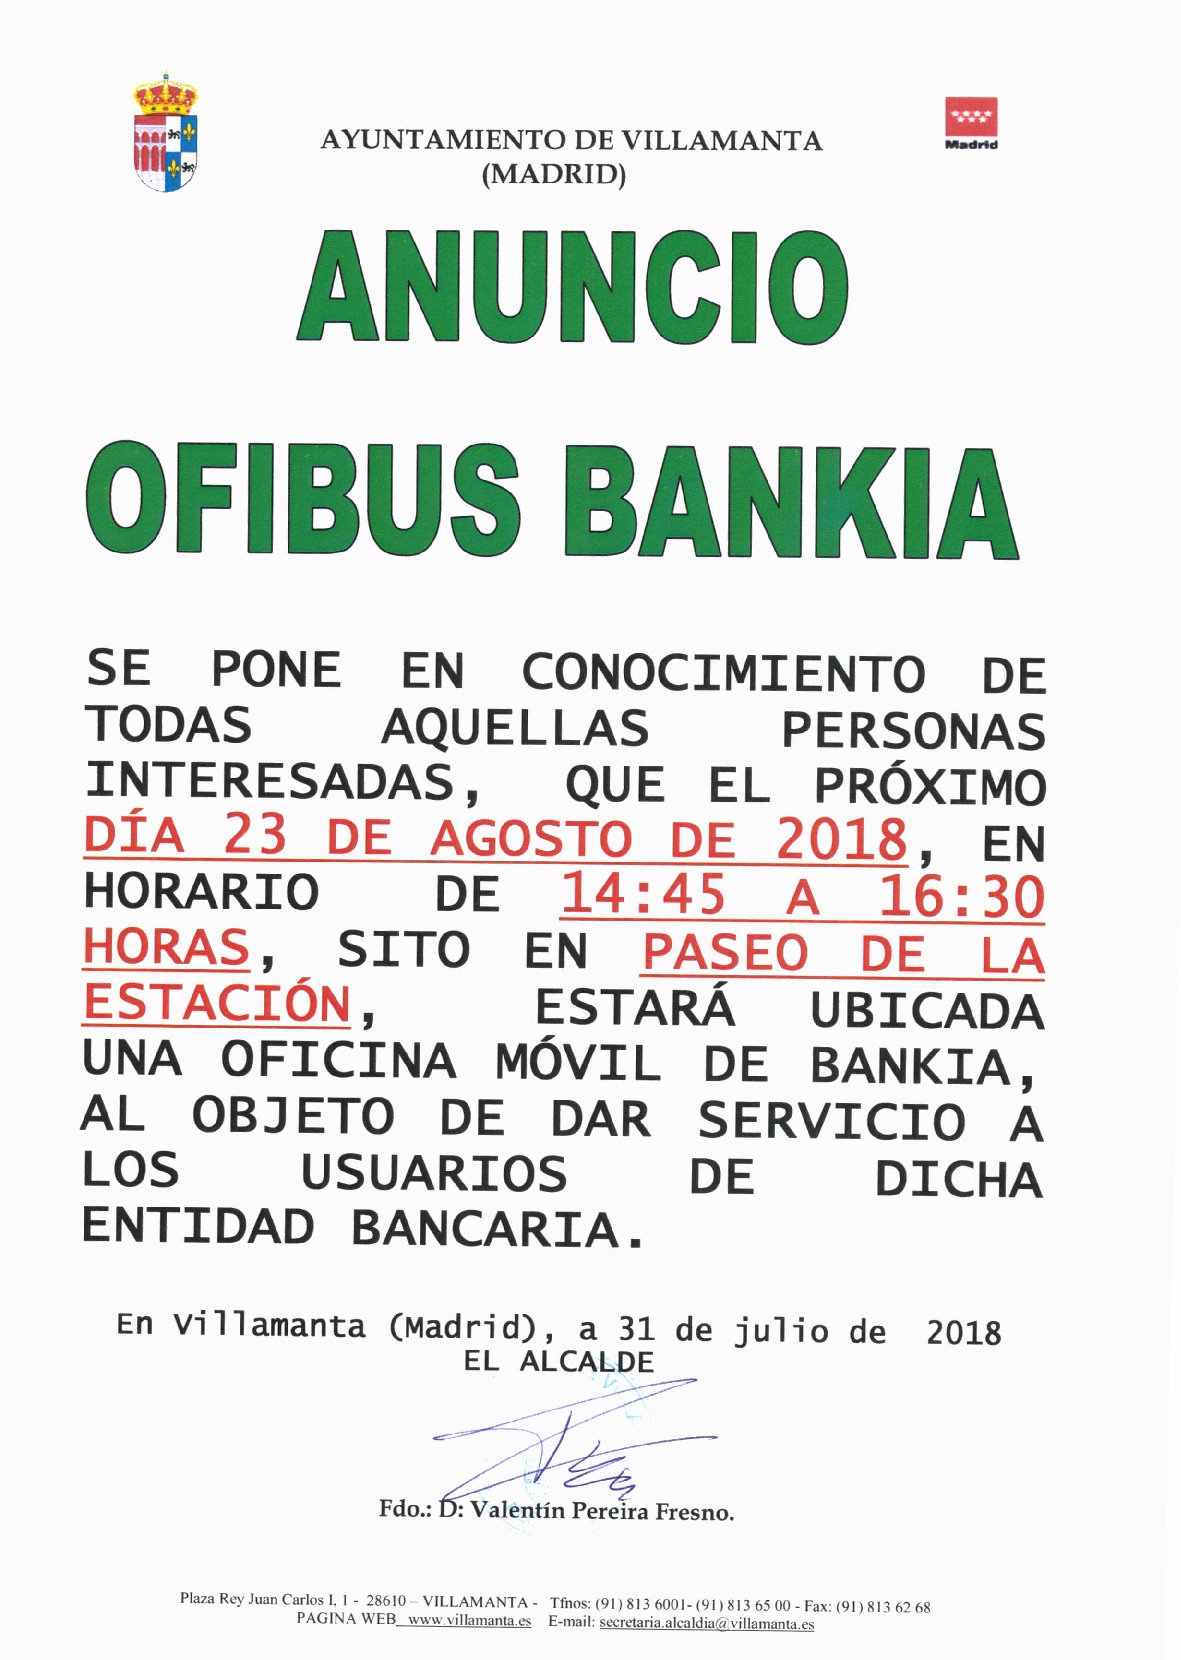 Ofibus Bankia 23 agosto 2018